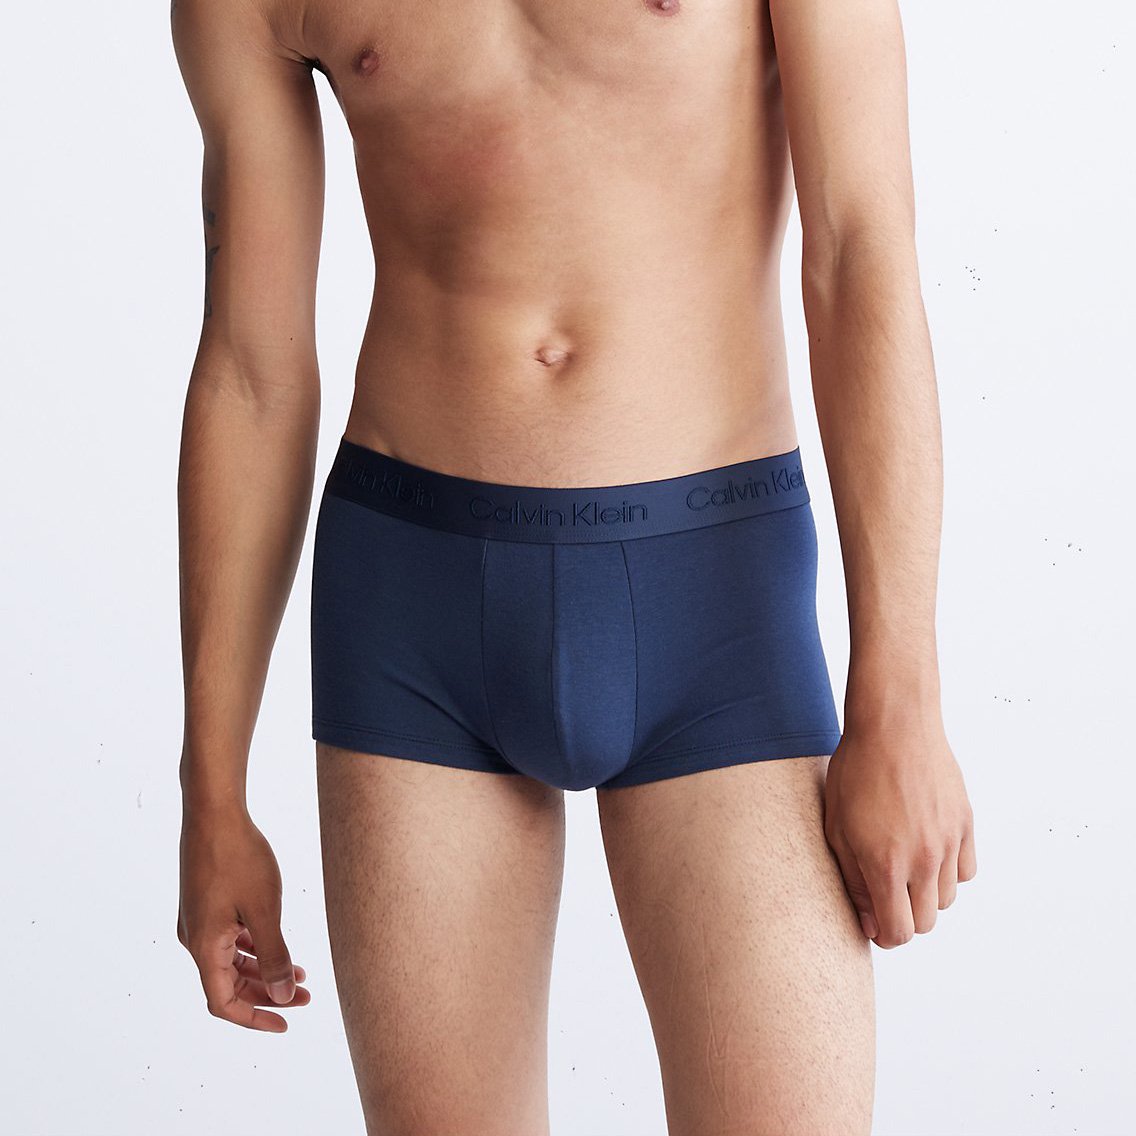 Calvin Klein(カルバンクライン)[NB3327-410]:ボクサーパンツ,男性下着,インナーの通販